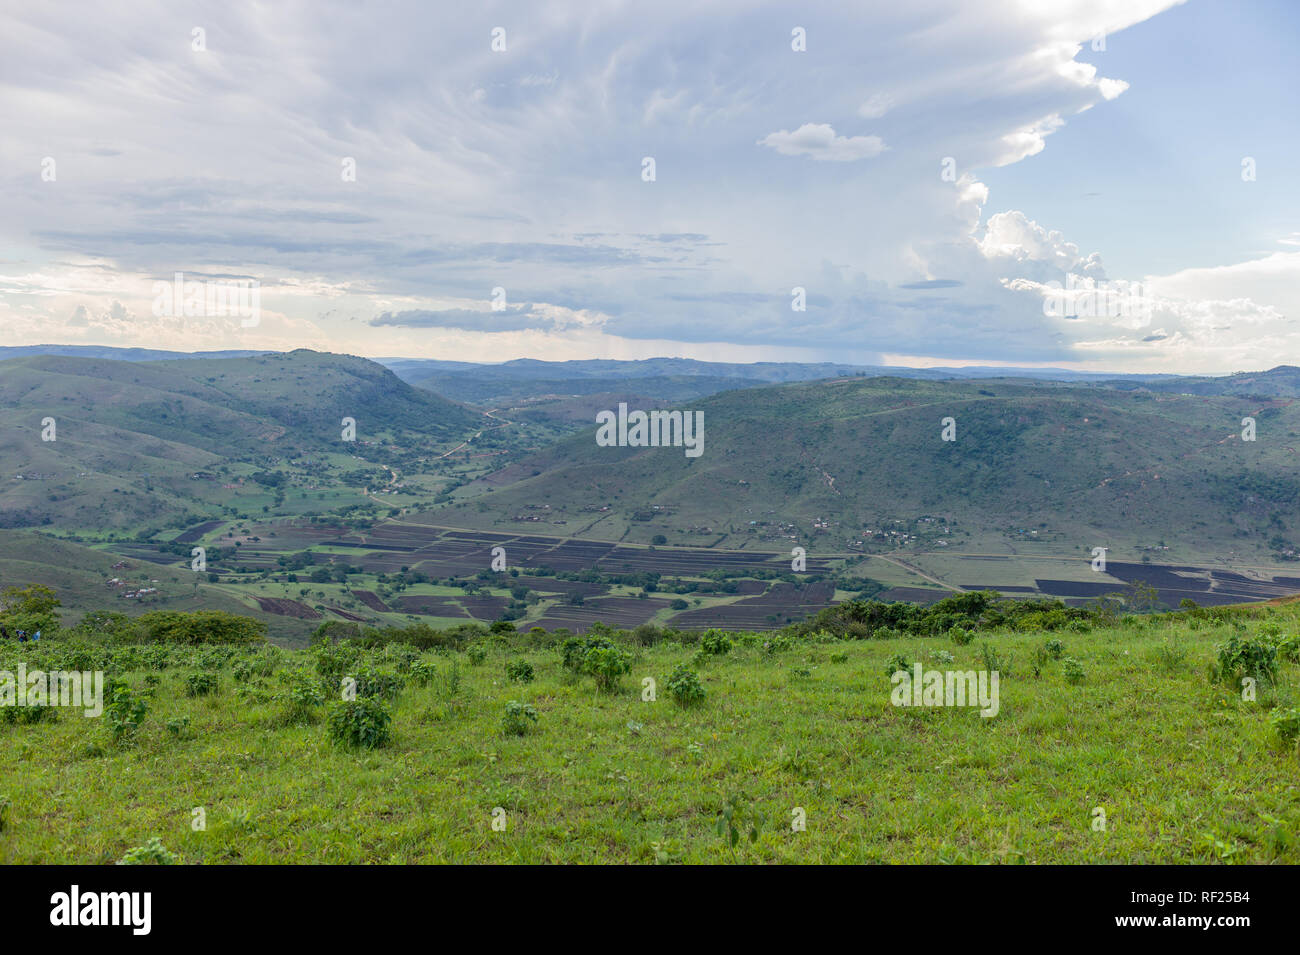 Ländliche Gebiete in KwaZulu-Natal, Südafrika, verfügen über kleine Weide- und Landwirtschaft auf die sanften, grünen Hügel. Stockfoto